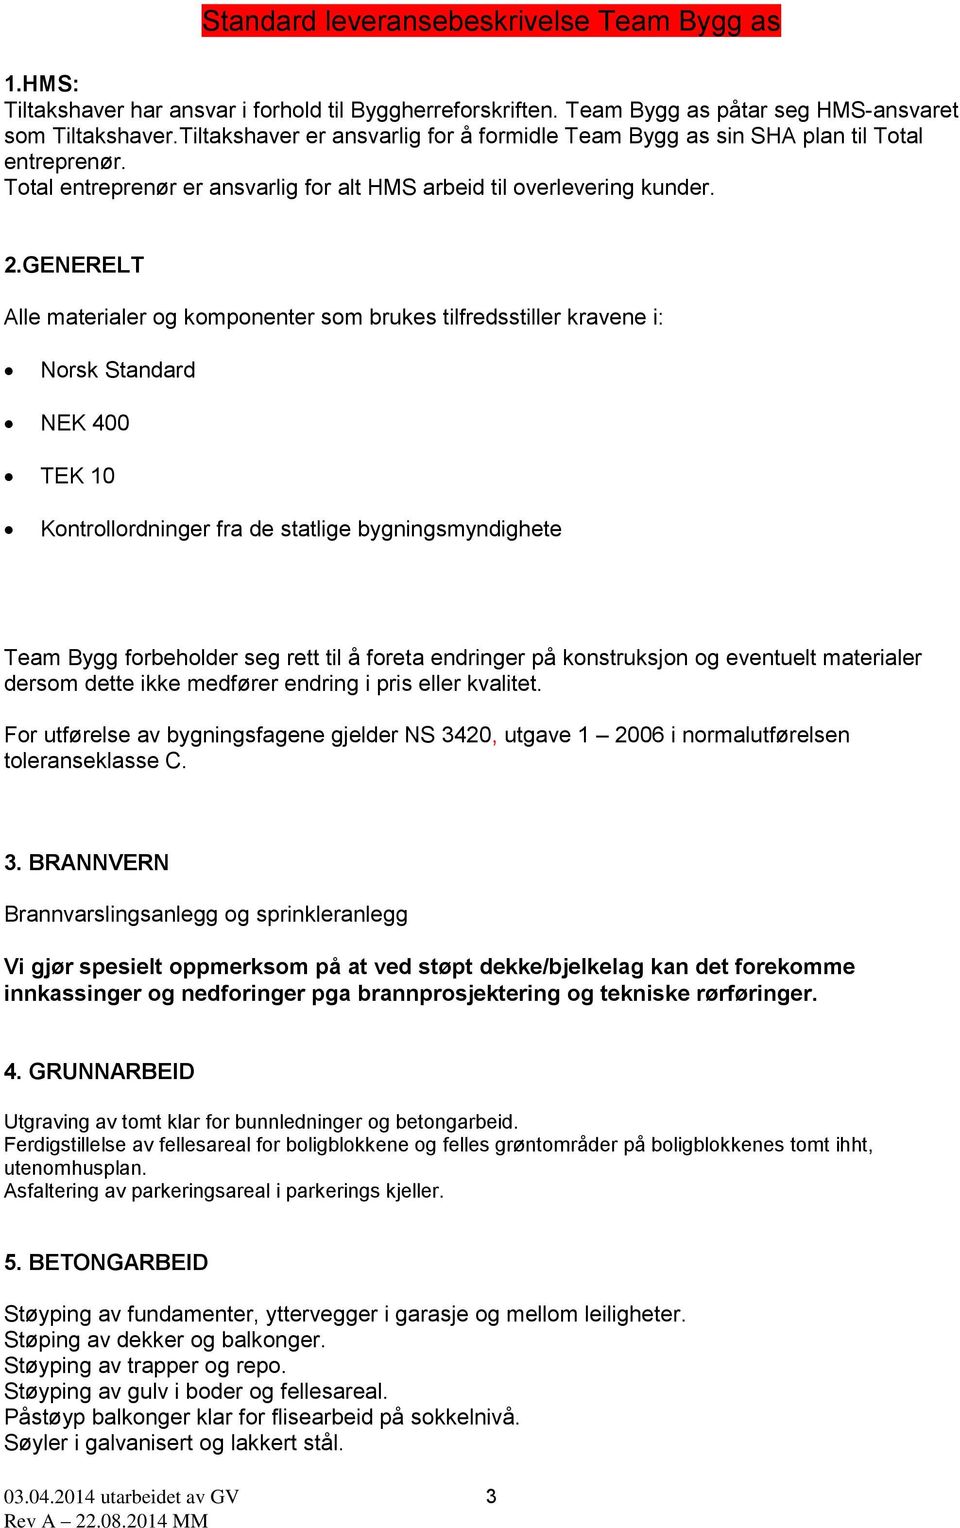 GENERELT Alle materialer og komponenter som brukes tilfredsstiller kravene i: Norsk Standard NEK 400 TEK 10 Kontrollordninger fra de statlige bygningsmyndighete Team Bygg forbeholder seg rett til å